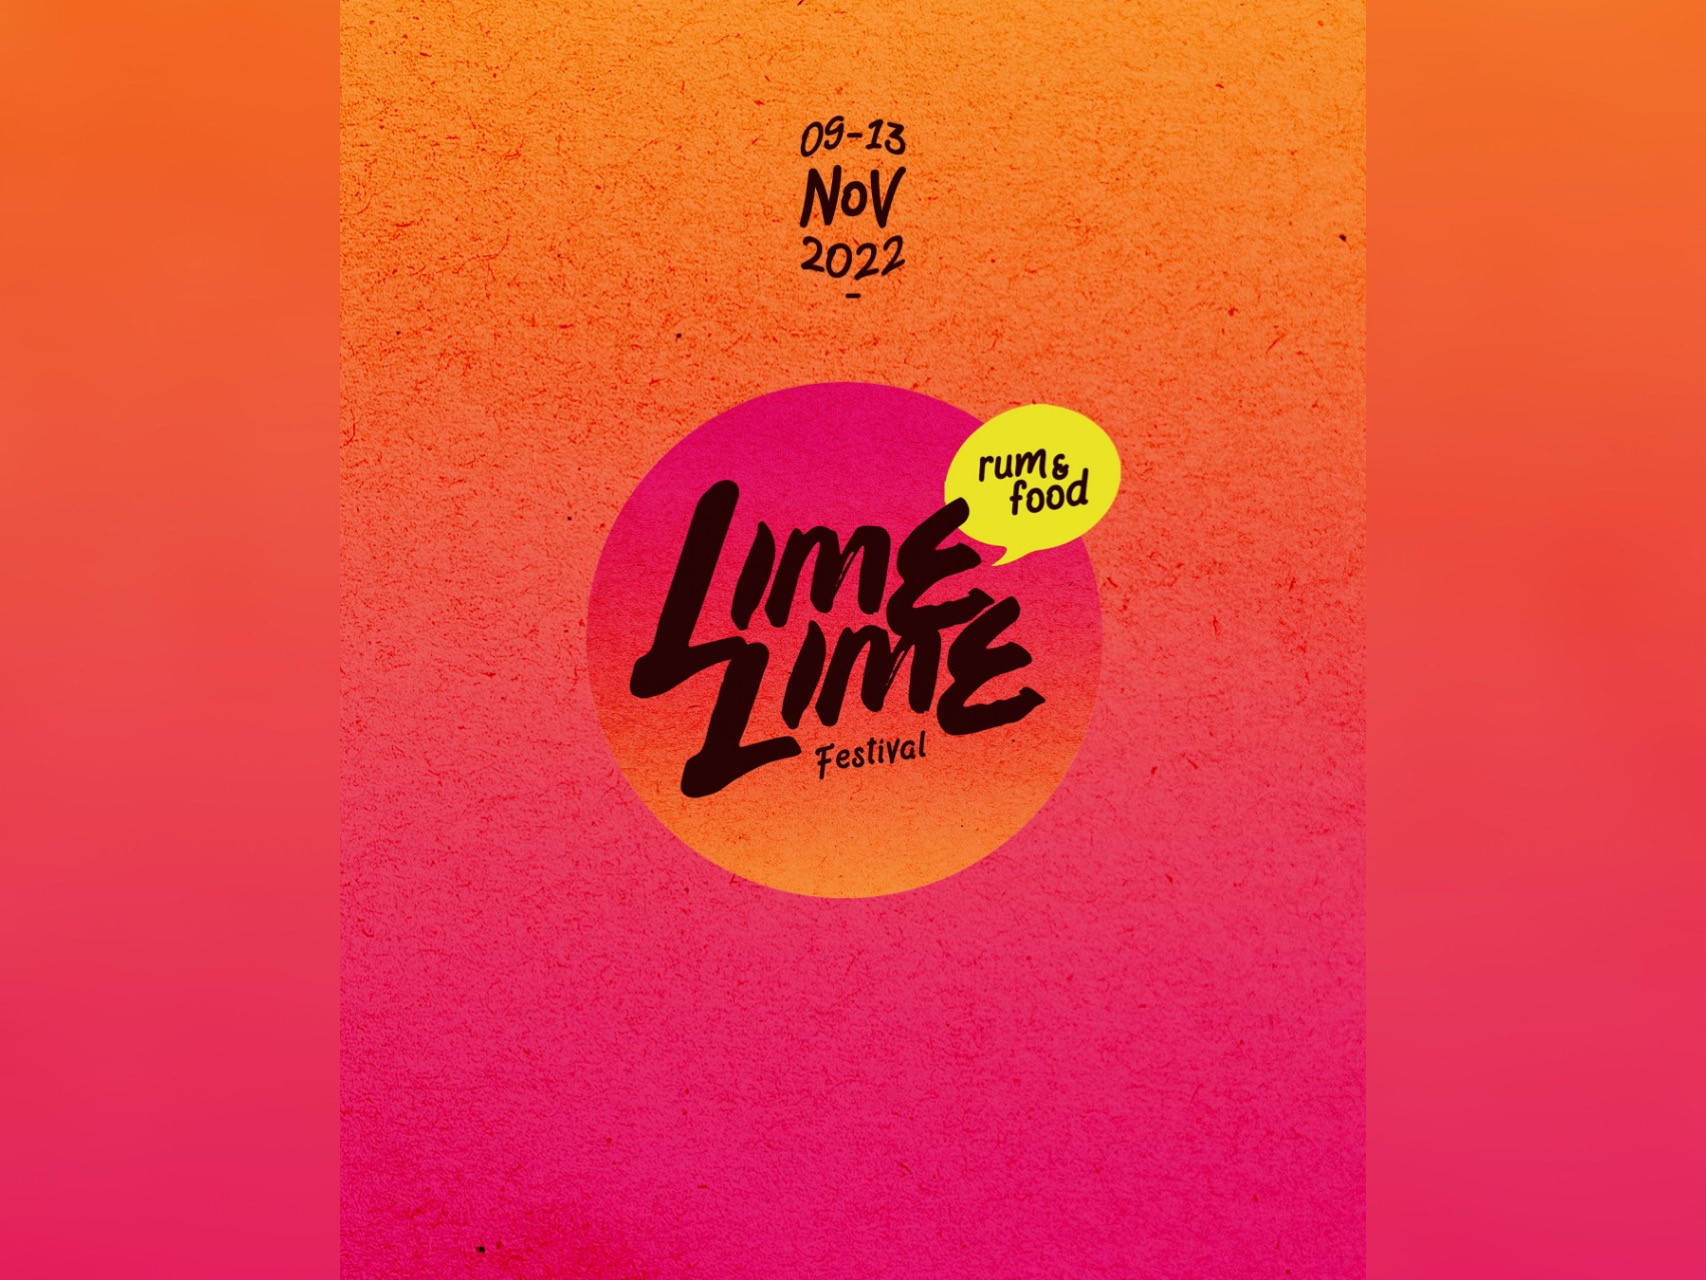     Le Lime Lime festival prend la Route du Rhum

